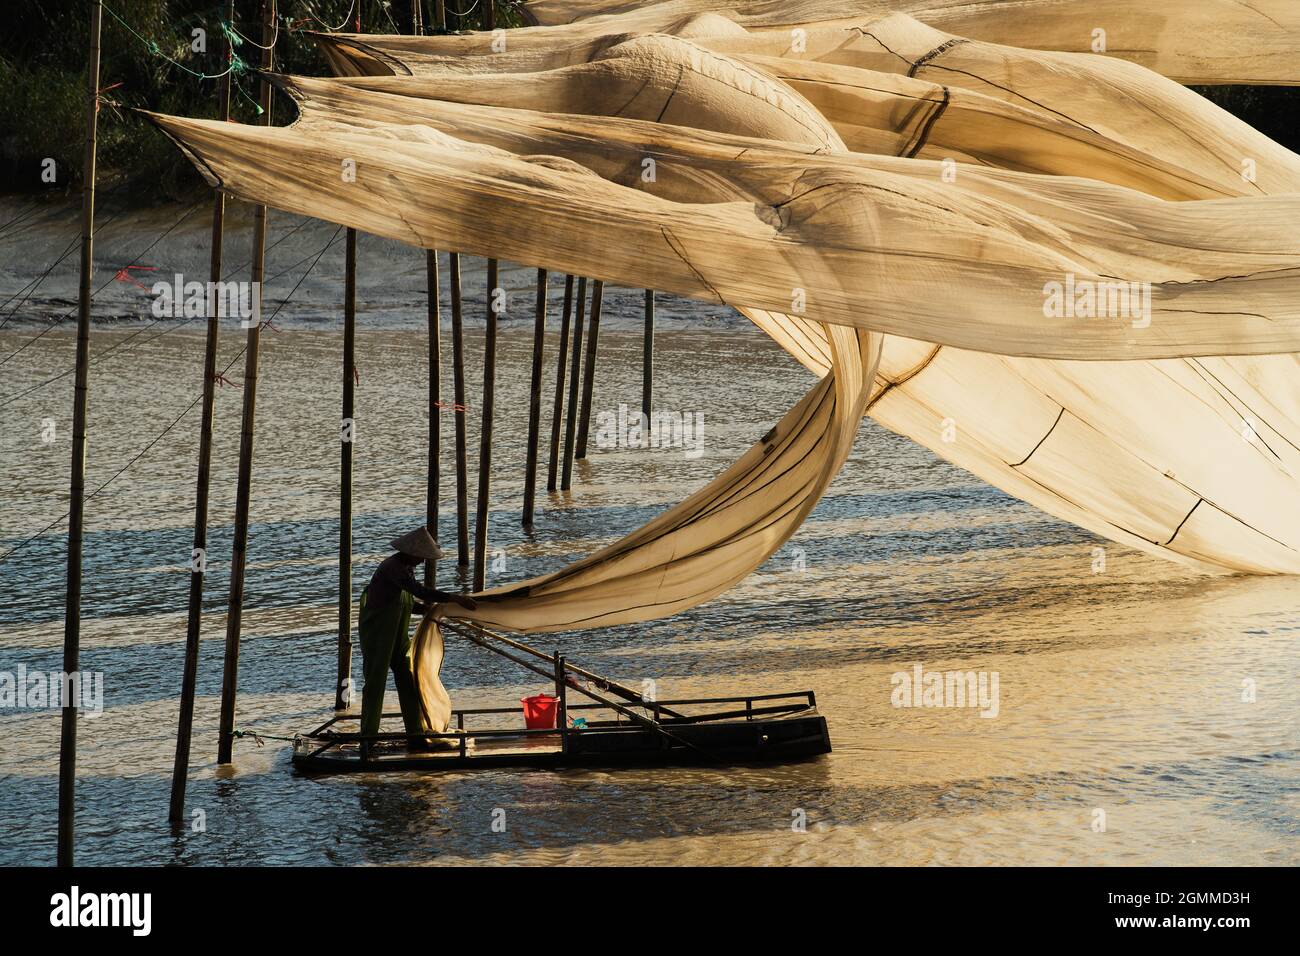 XIAPU, CHINA – DEC 08, 2019: A fisherman hangs giant fishing nets